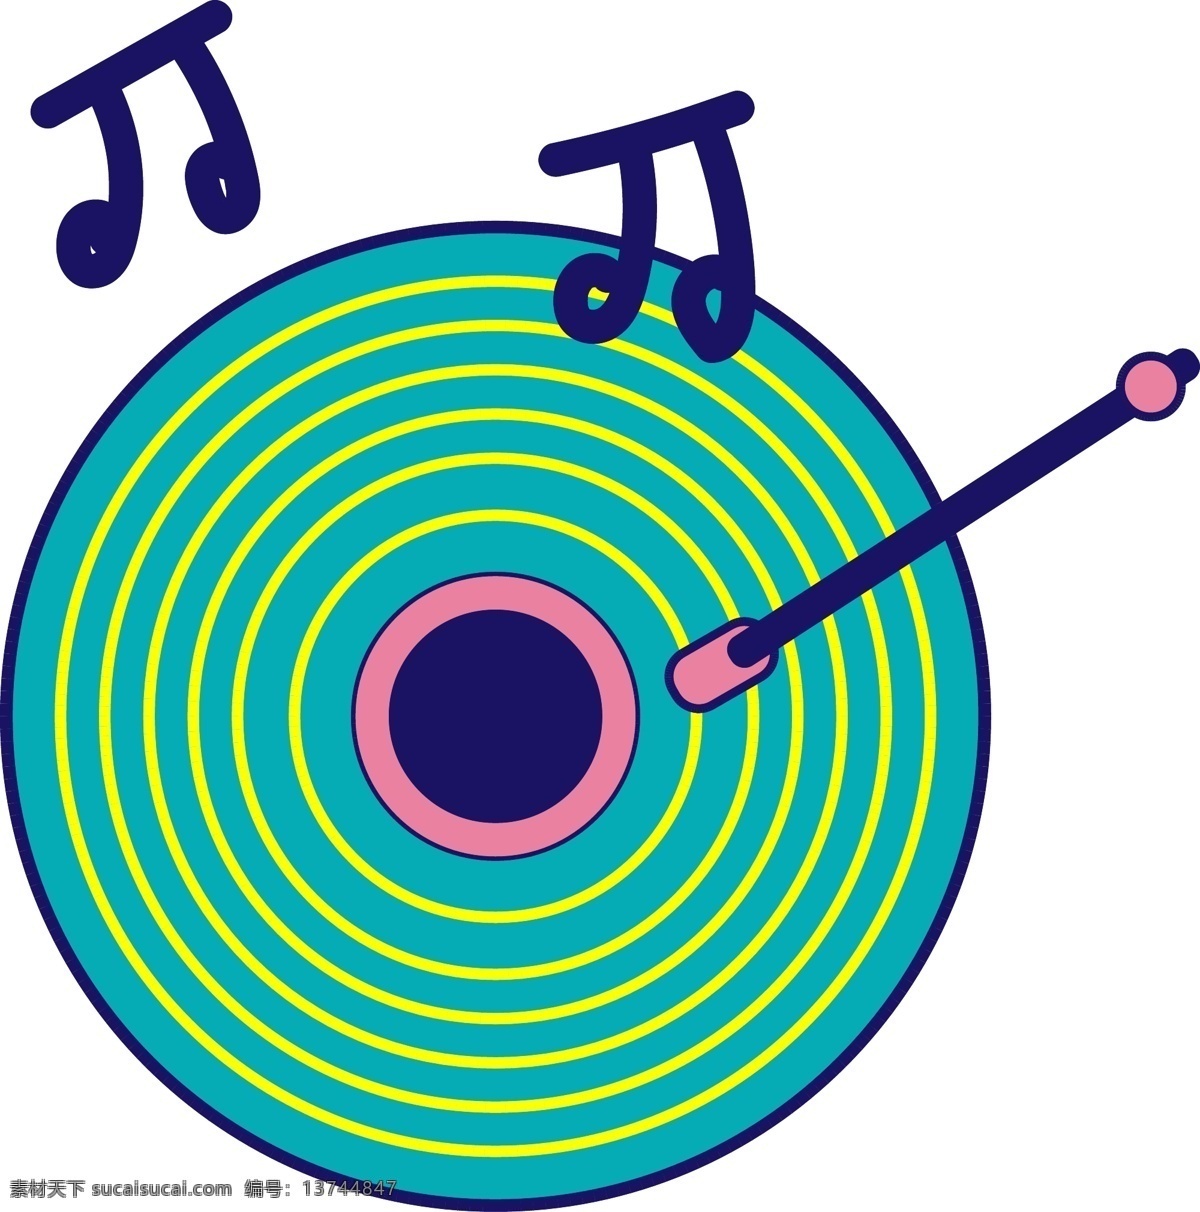 音乐 符号 磁盘 插画 音乐的磁盘 卡通插画 音乐插画 音乐符号 符号插画 跳动的符号 蓝色的符号